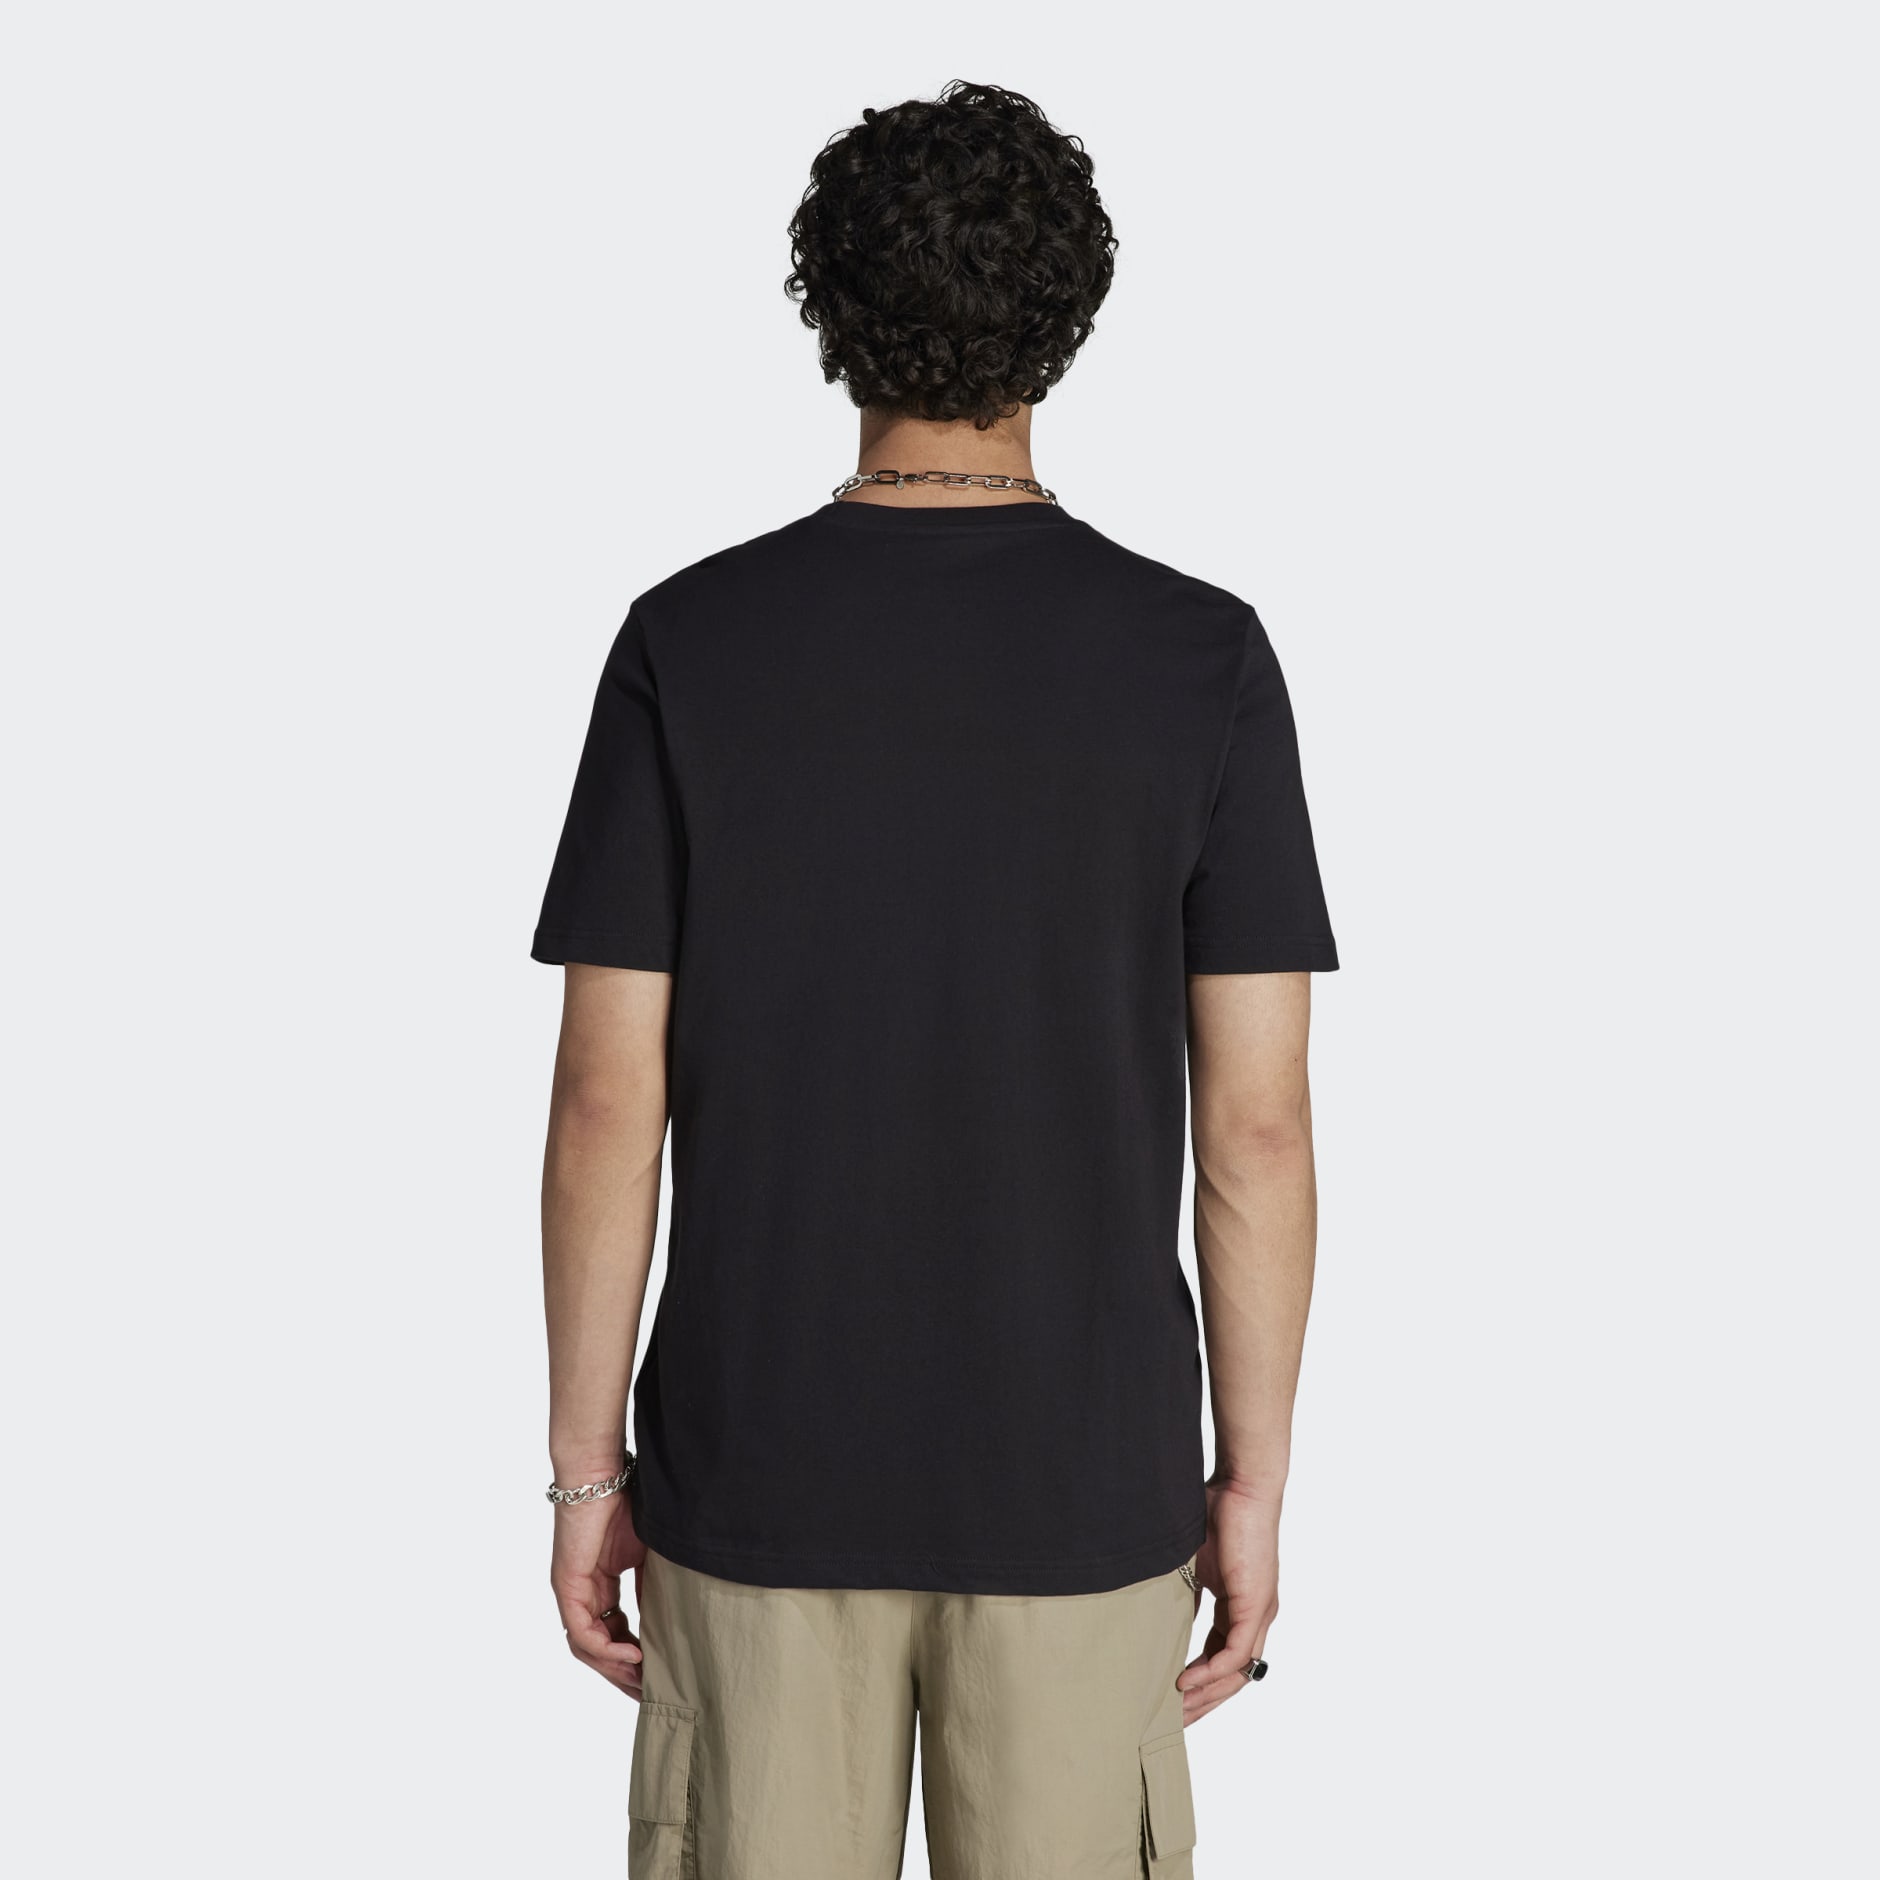 SALE限定セールCAMO T-SHIRT BLACK/CAMO[S,XL] Tシャツ/カットソー(半袖/袖なし)